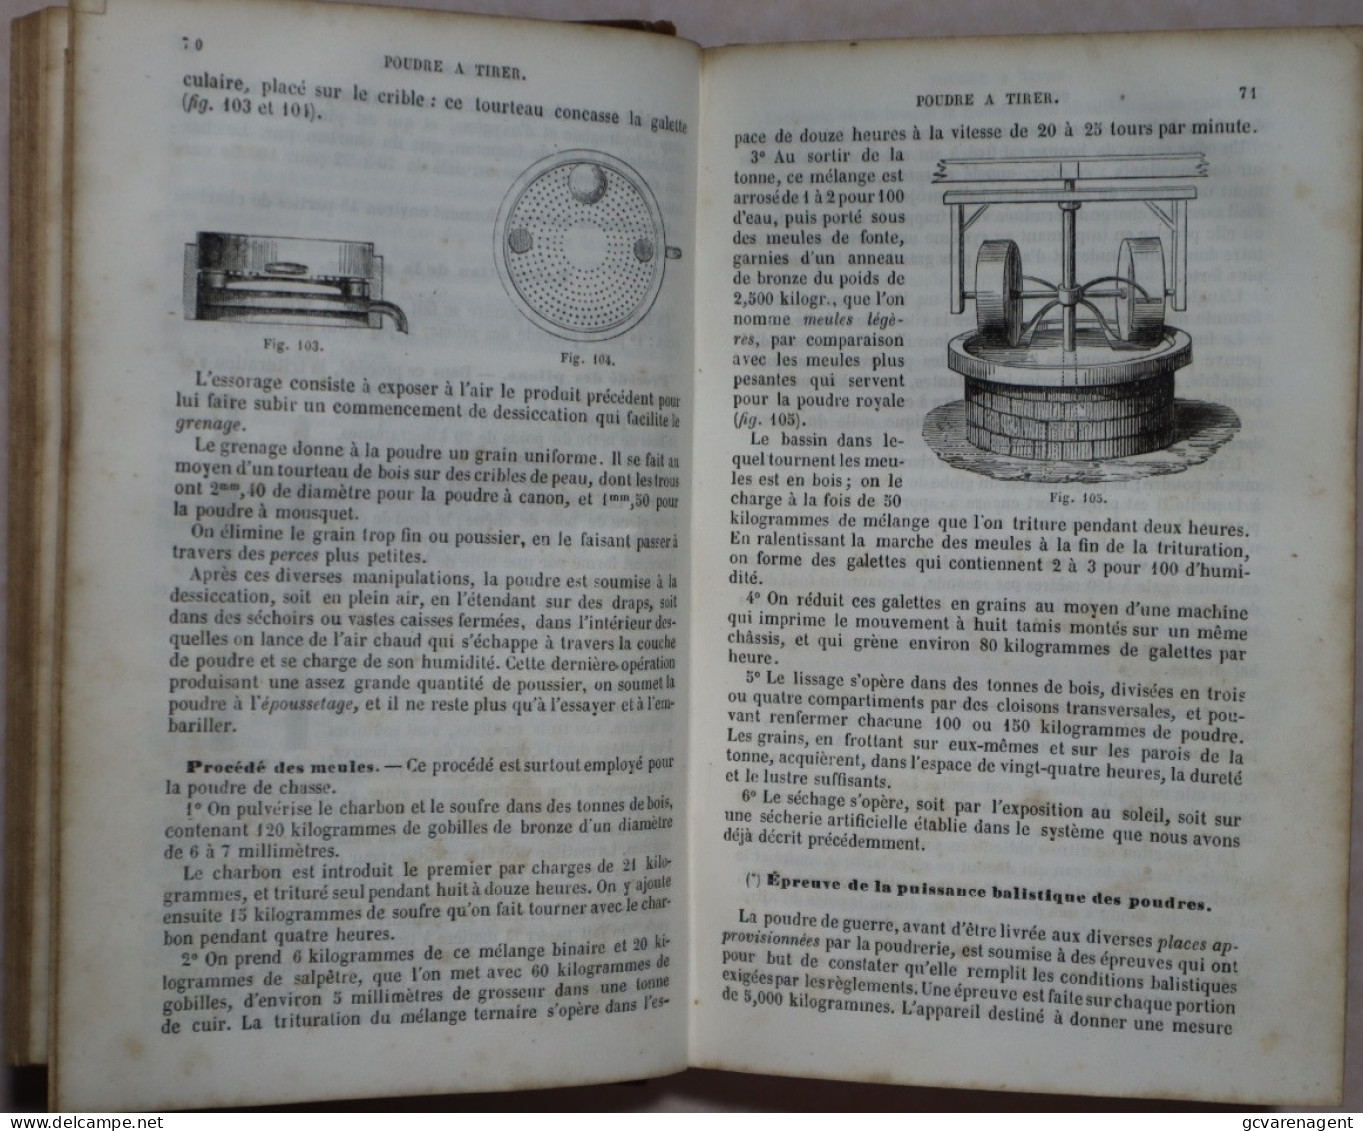 ABREGE DE CHIMIE 1859 PARTIE II. METAUX ET METALLURGIE = REDELIJKE STAAT = 464 PAGES  180 X 120 MM  ZIE AFBEELDINGEN - 1801-1900